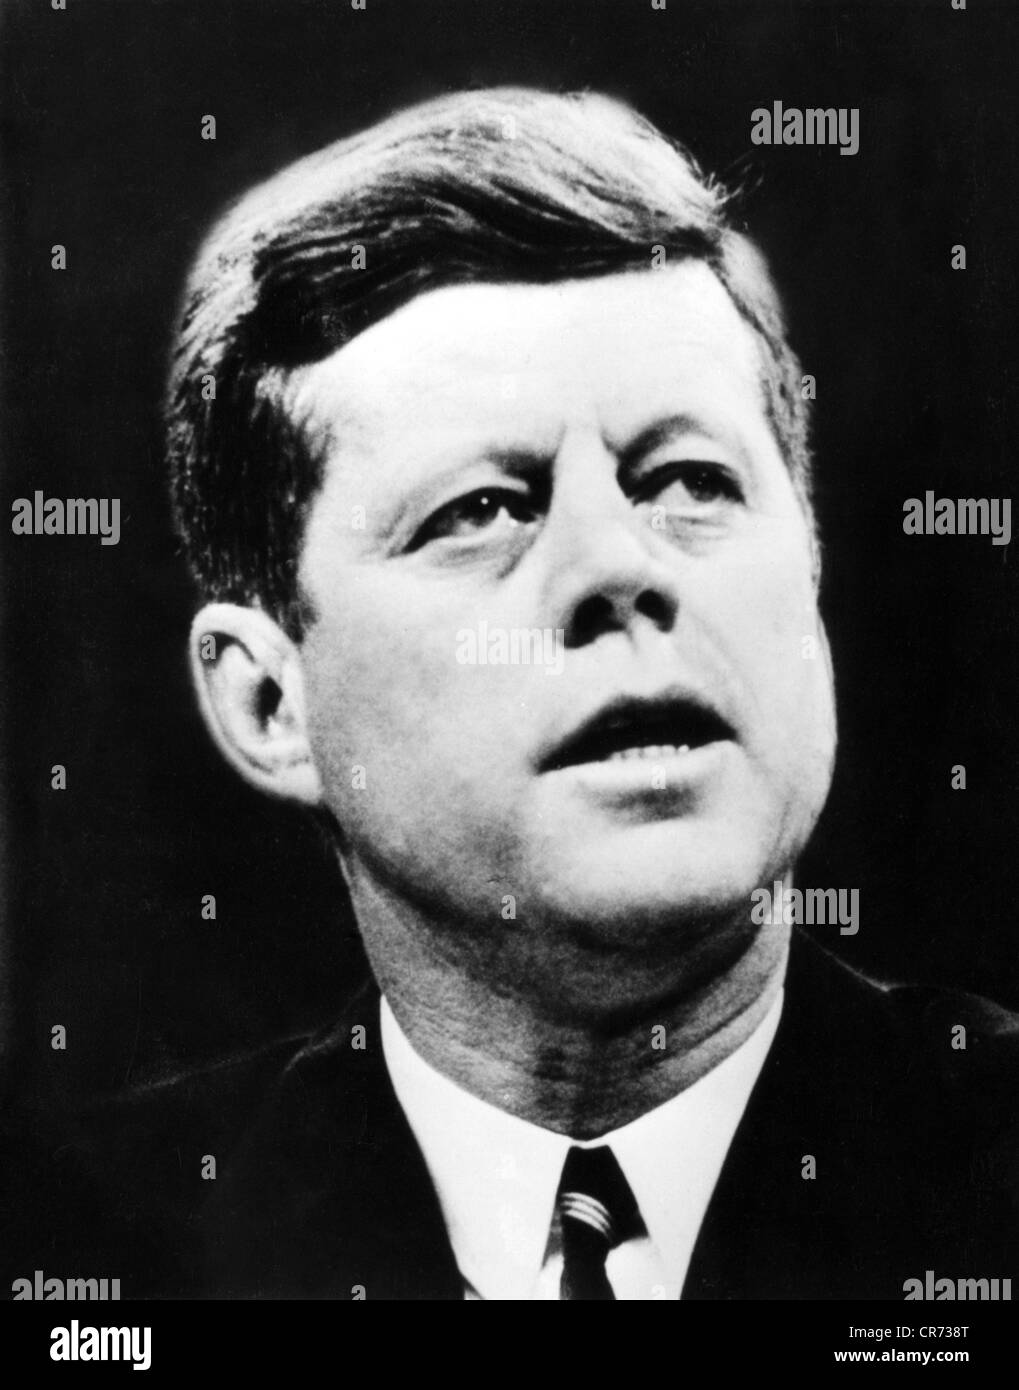 Kennedy, John Fitzgerald, 29.5.1917 - 22.11.1963, político estadounidense (Dem.), Presidente de los EE.UU. 20.1.1961 - 22.11.1963, retrato, principios de los 60, , Foto de stock